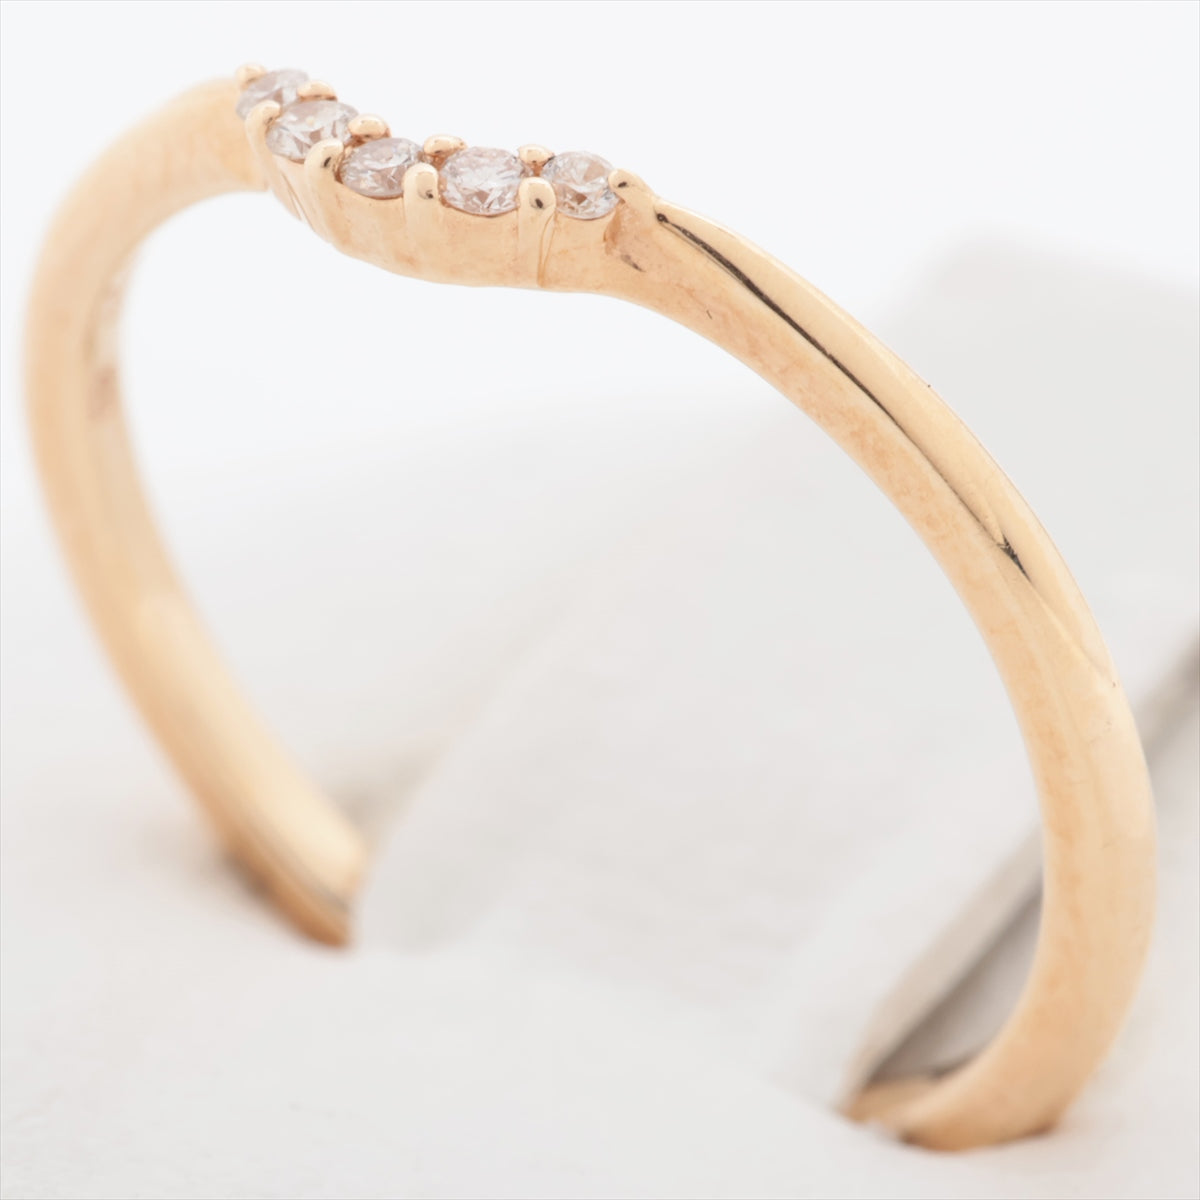 Agat Diamond Ring K10 (YG) 0.9g 0.03 E